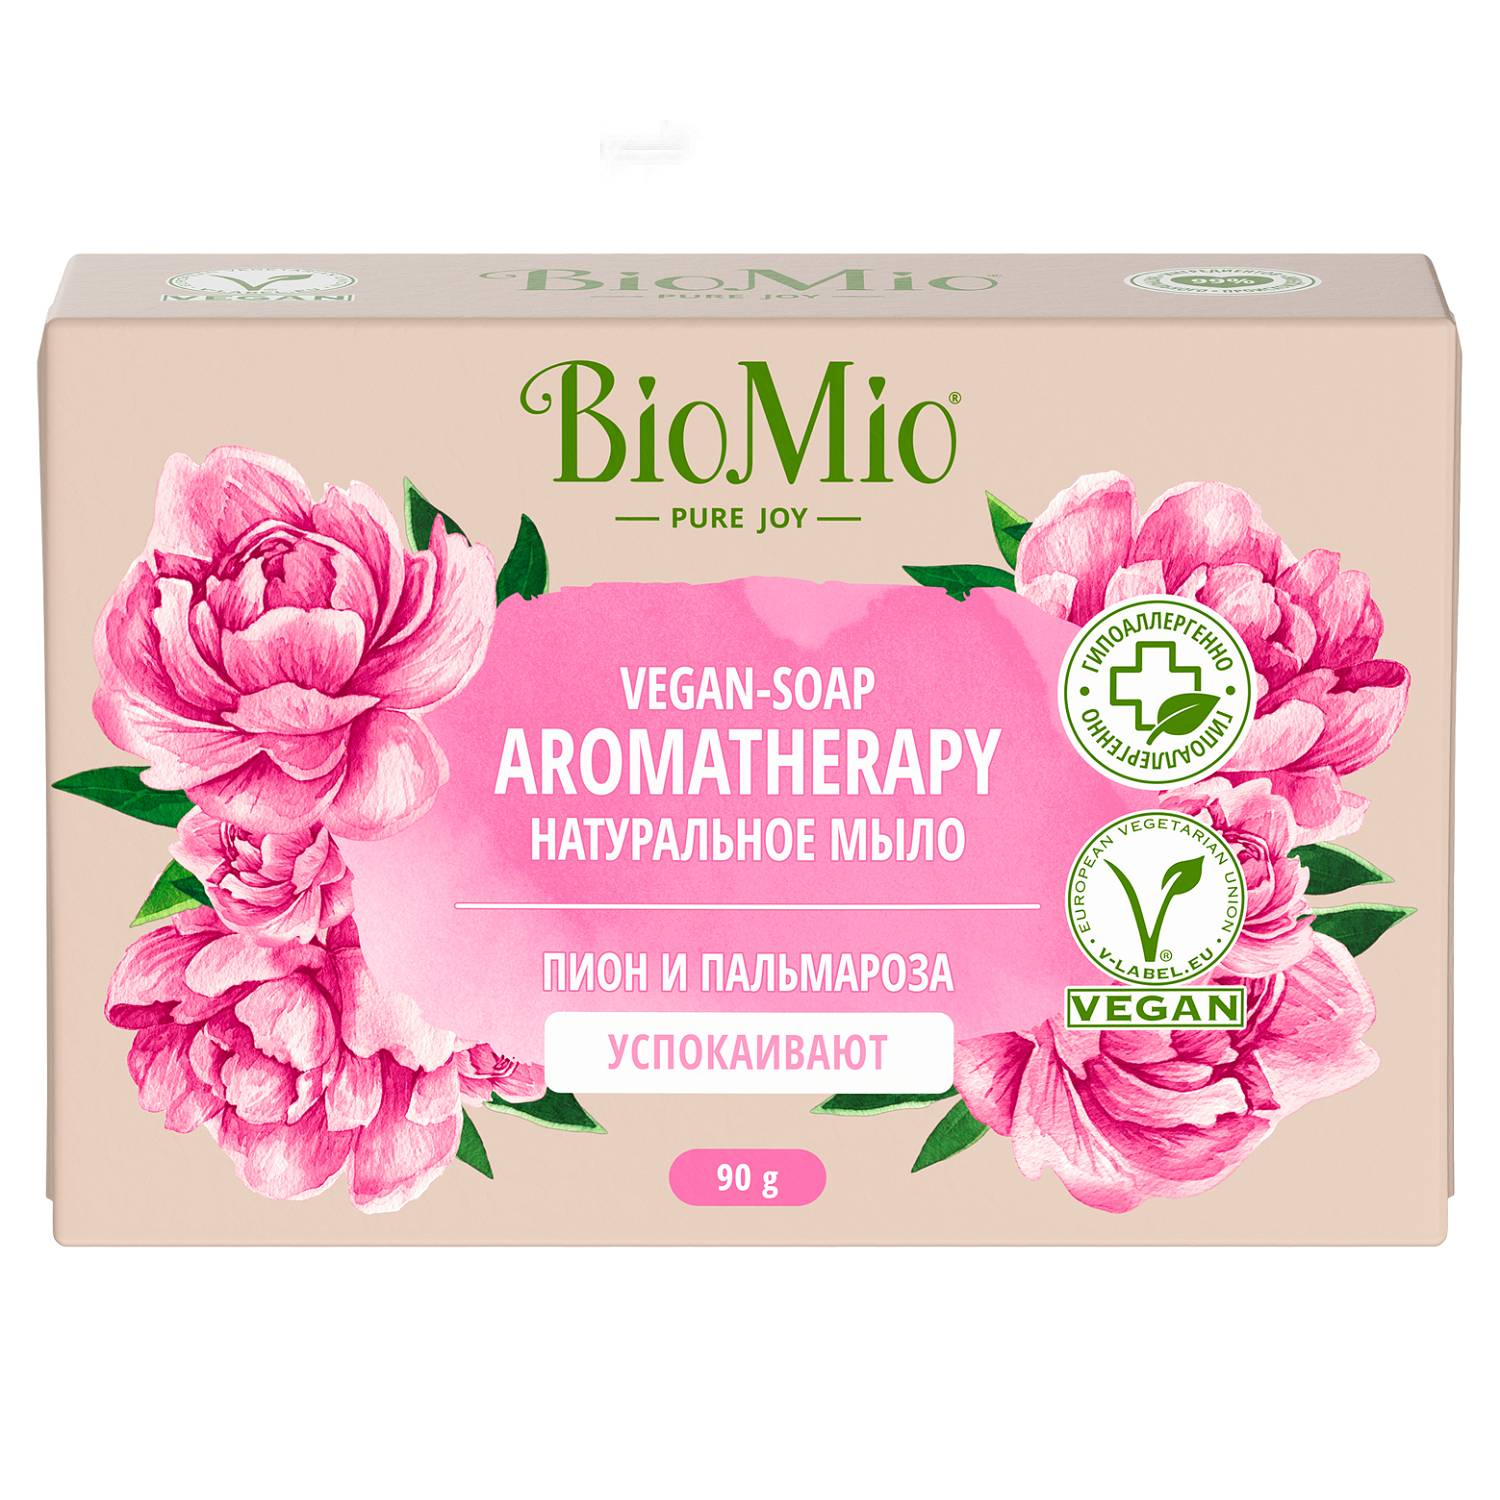 BioMio Натуральное мыло Пион и пальмароза Vegan Soap Aromatherapy, 90 г (BioMio, Мыло) веганское мыло для бритья без запаха 80 г bambow bambaw